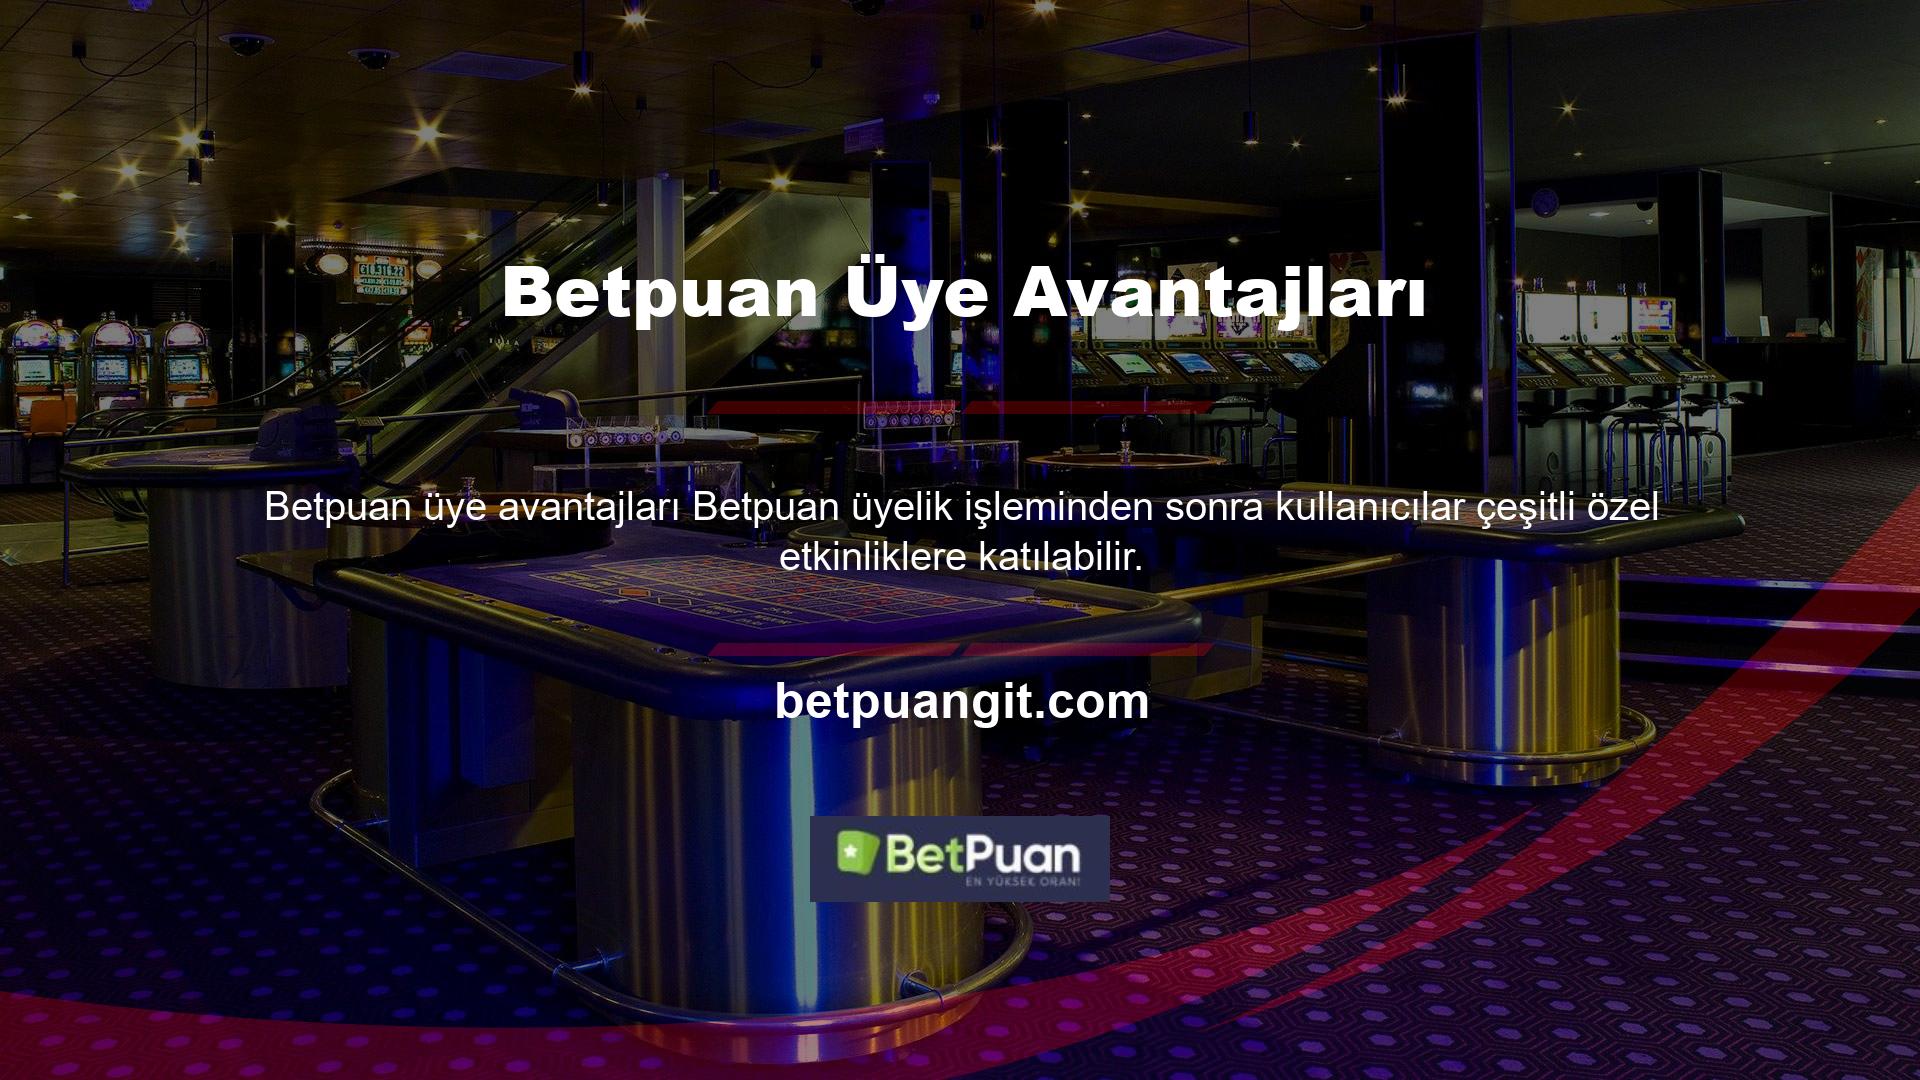 Avantajlı bonus Betpuan üye avantajları ve yüksek getiriler, Betpuan sitesine üye olan kullanıcıların fırsatları kazanca dönüştürmesini sağlar